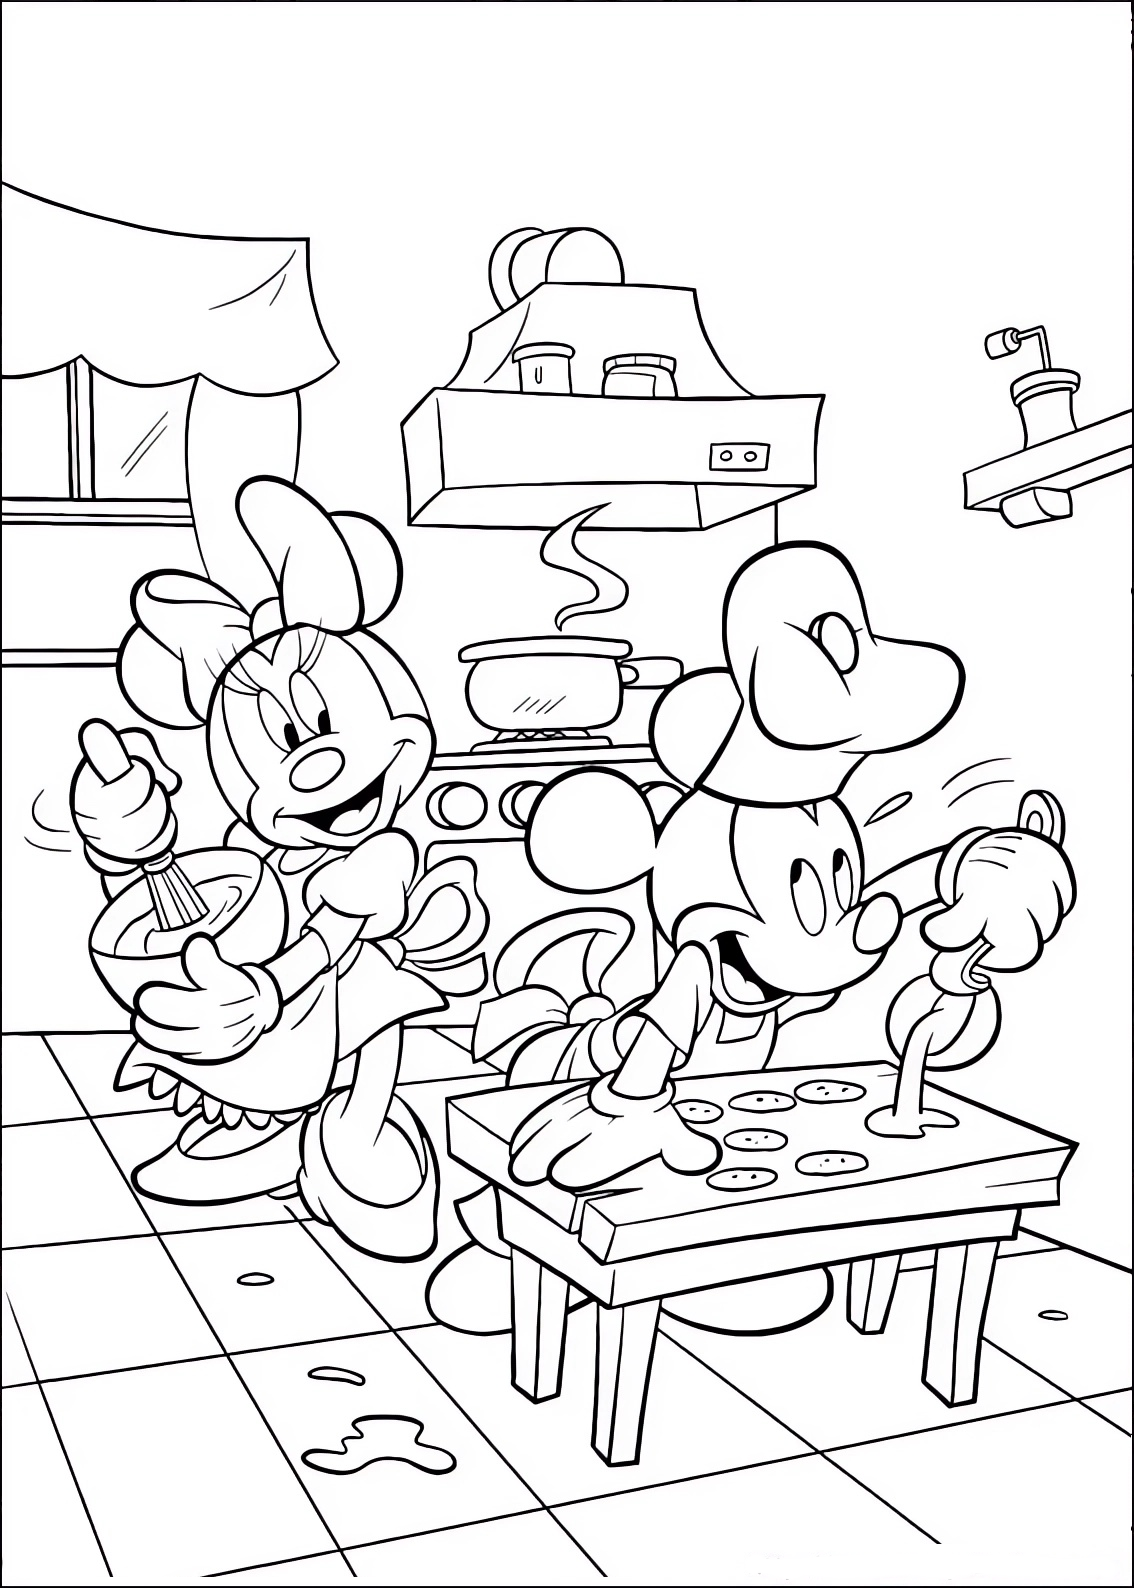 Disegno da colorare di Minnie e Topolino (Mickey Mouse) pasticcieri che preparano dei dolci